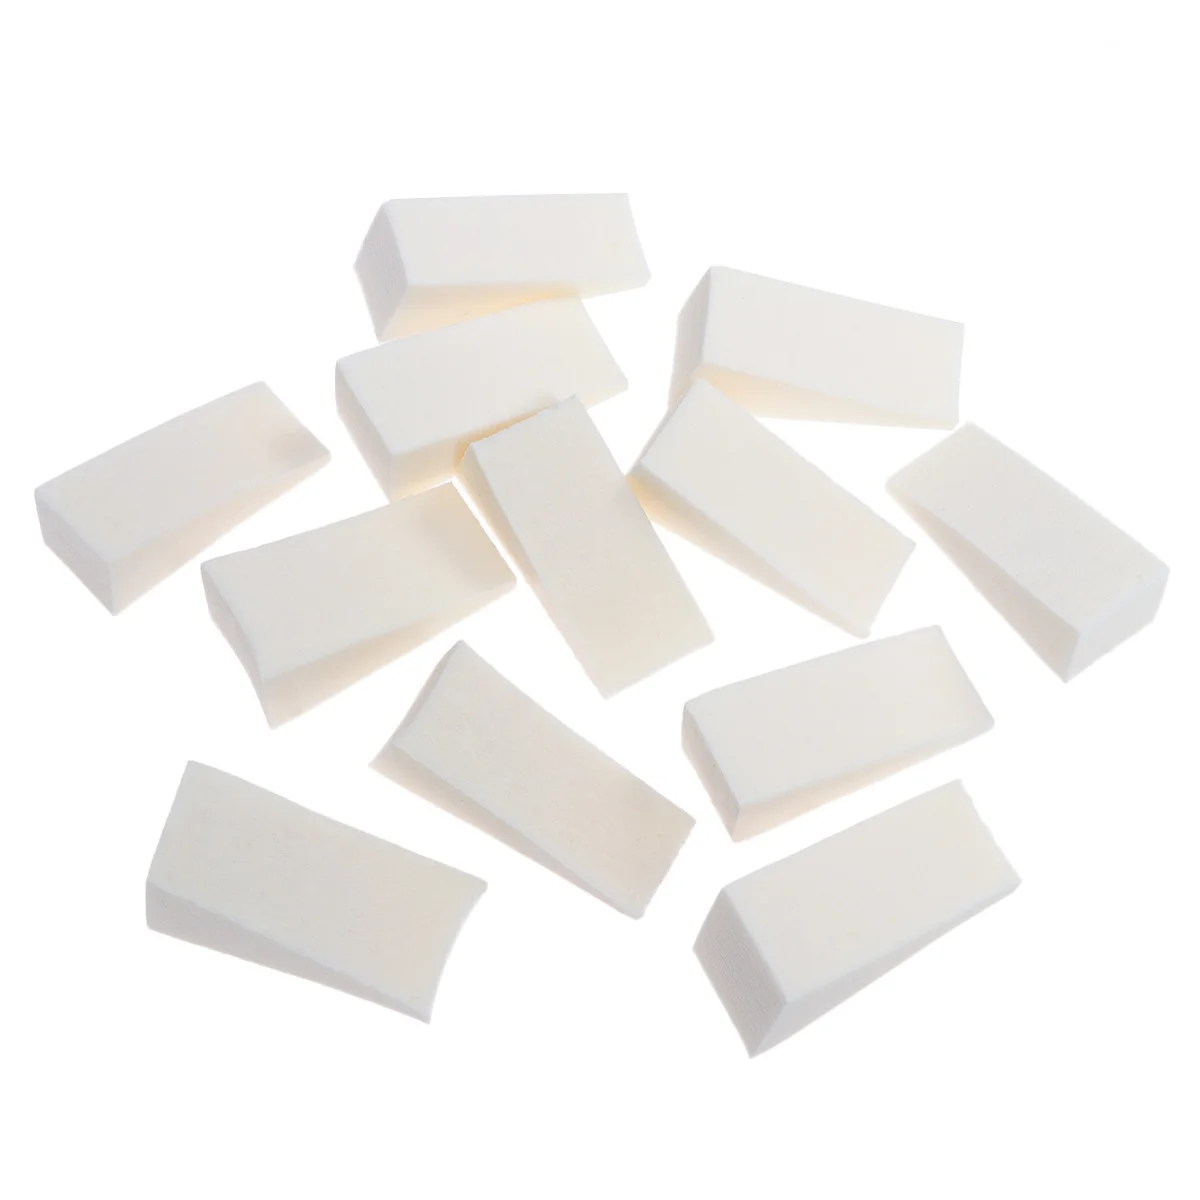 

12pcs Gradient Nails Sponges for Color Fade Manicure (White)